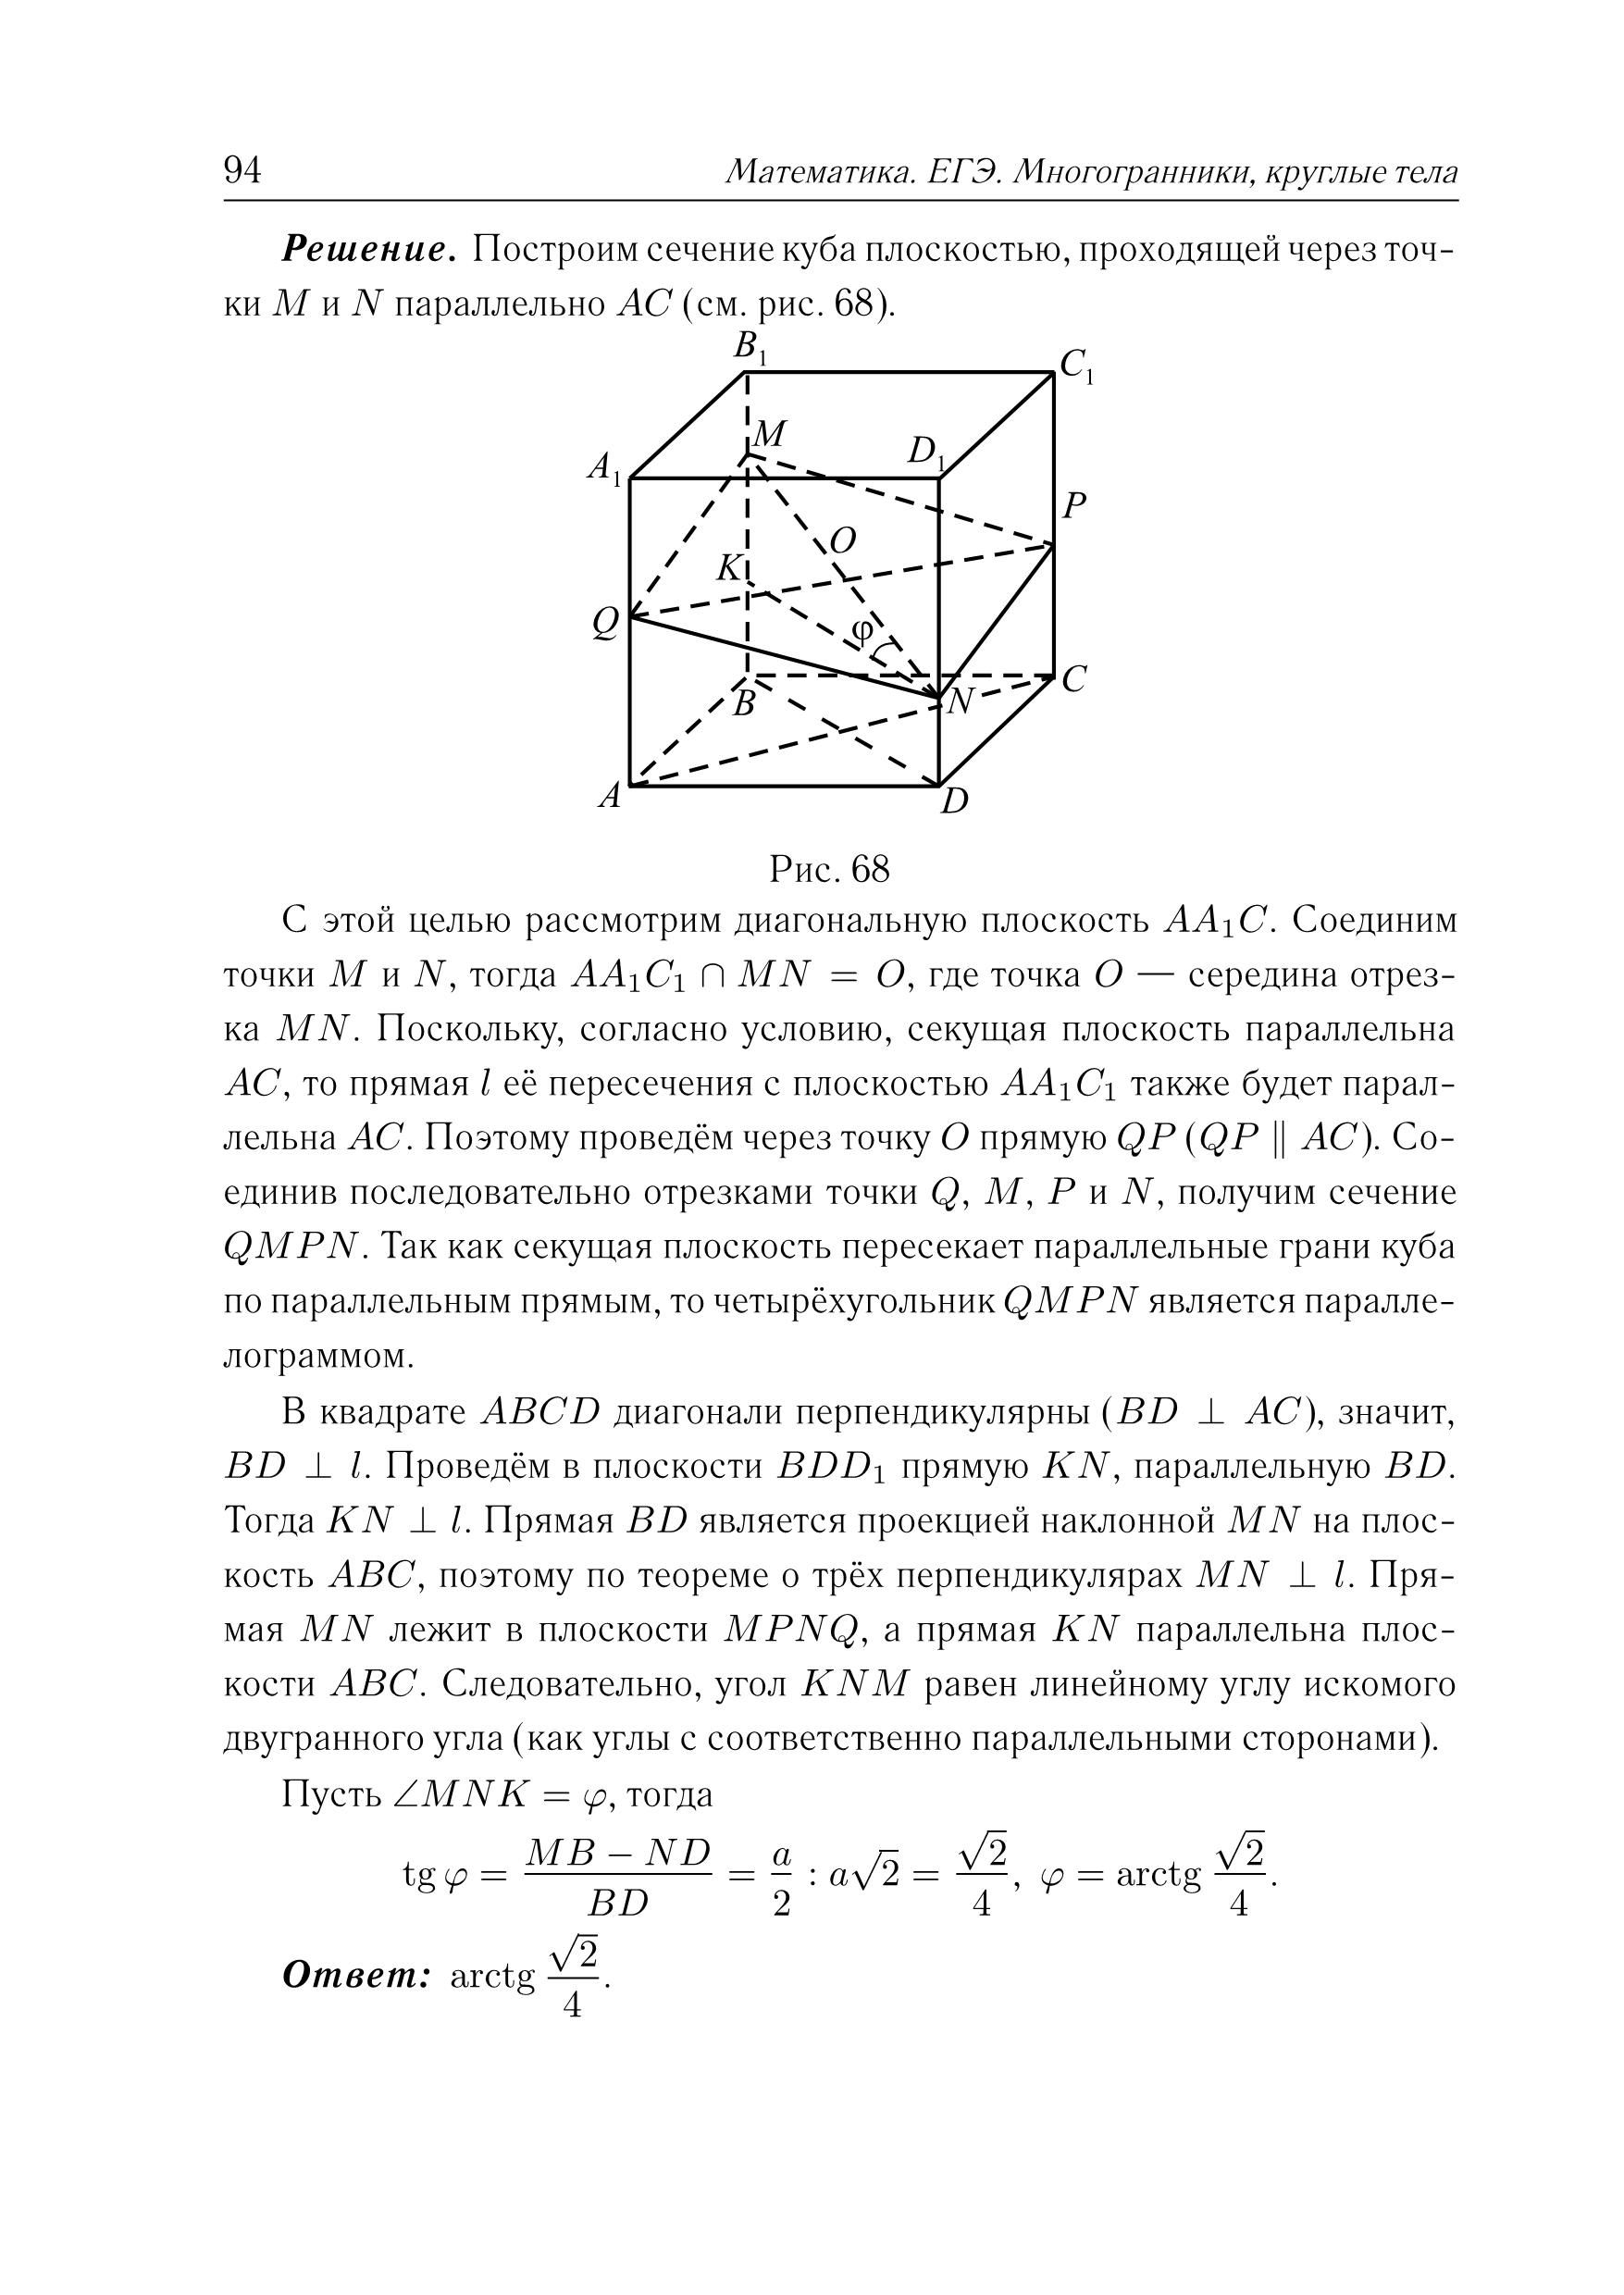 Математика. ЕГЭ. Многогранники, круглые тела (типовое задание 14). 3-е изд.